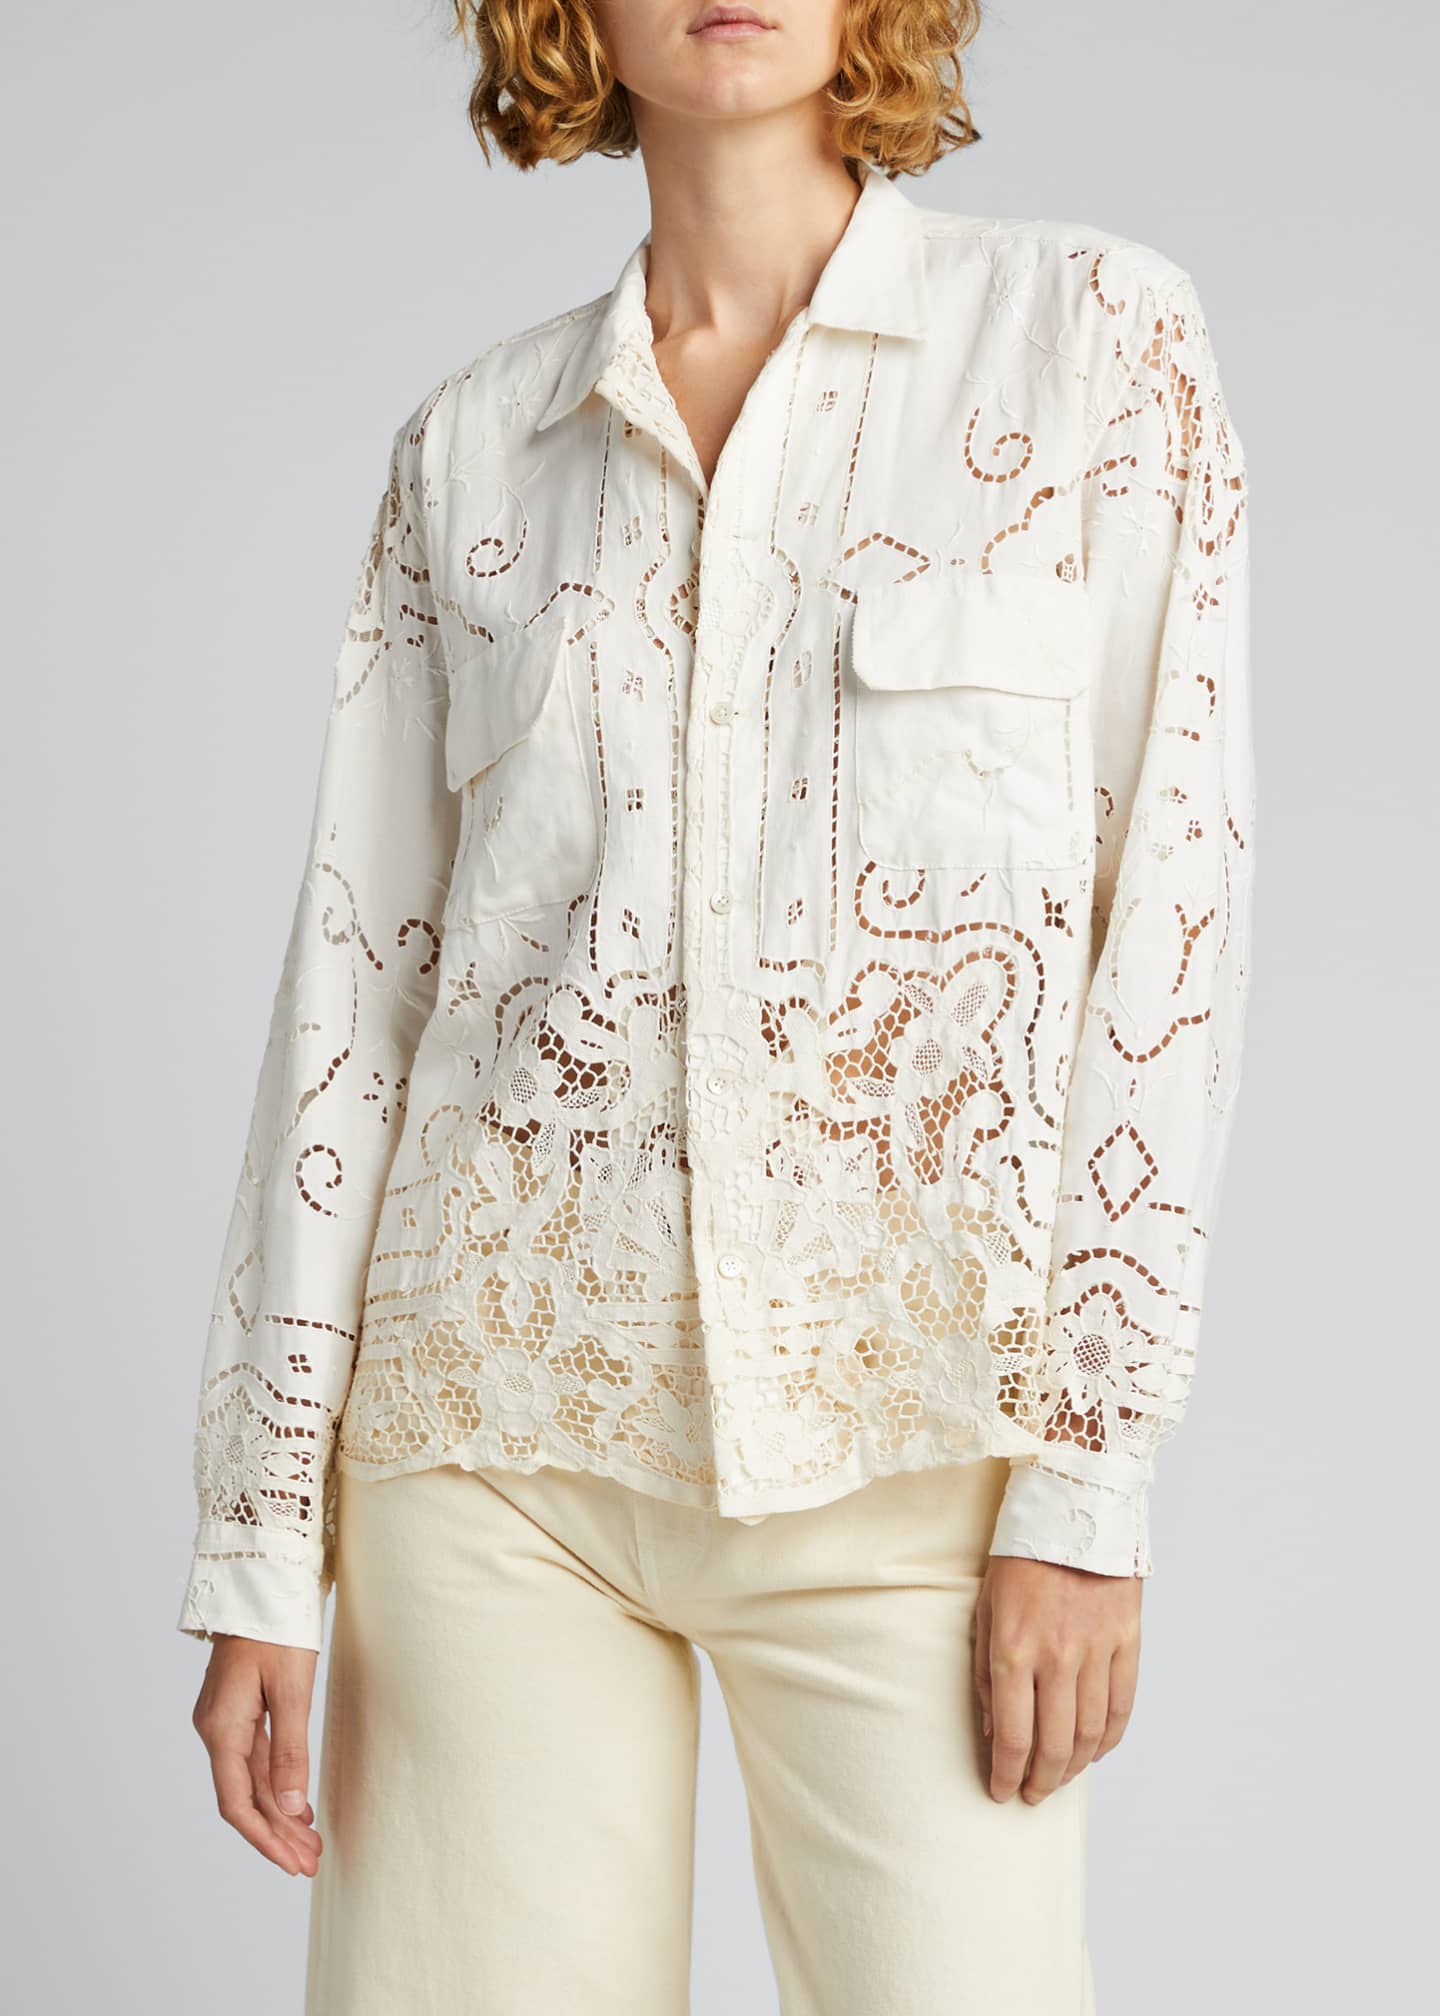 Bode One-of-a-Kind Cutwork Lace Linen Shirt - Bergdorf Goodman